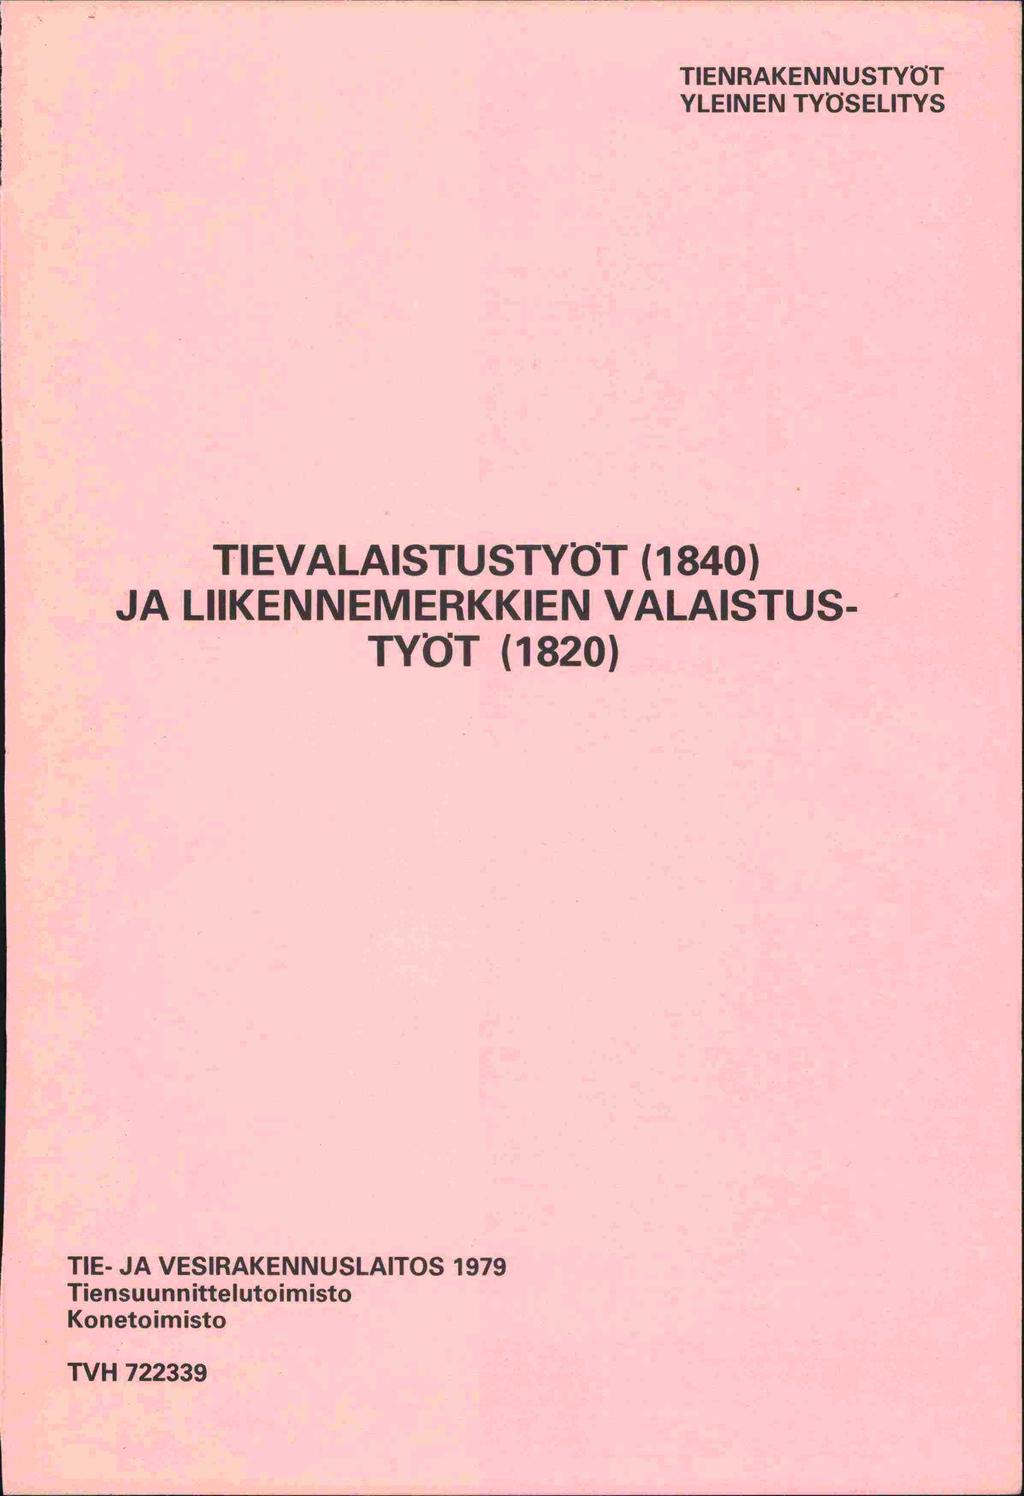 TIENRAKENNUSTYtT YLEINEN TYSELITYS TIEVALAISTUSTYT (1840) JA LIIKENNEMERKKIEN VALAISTUS-